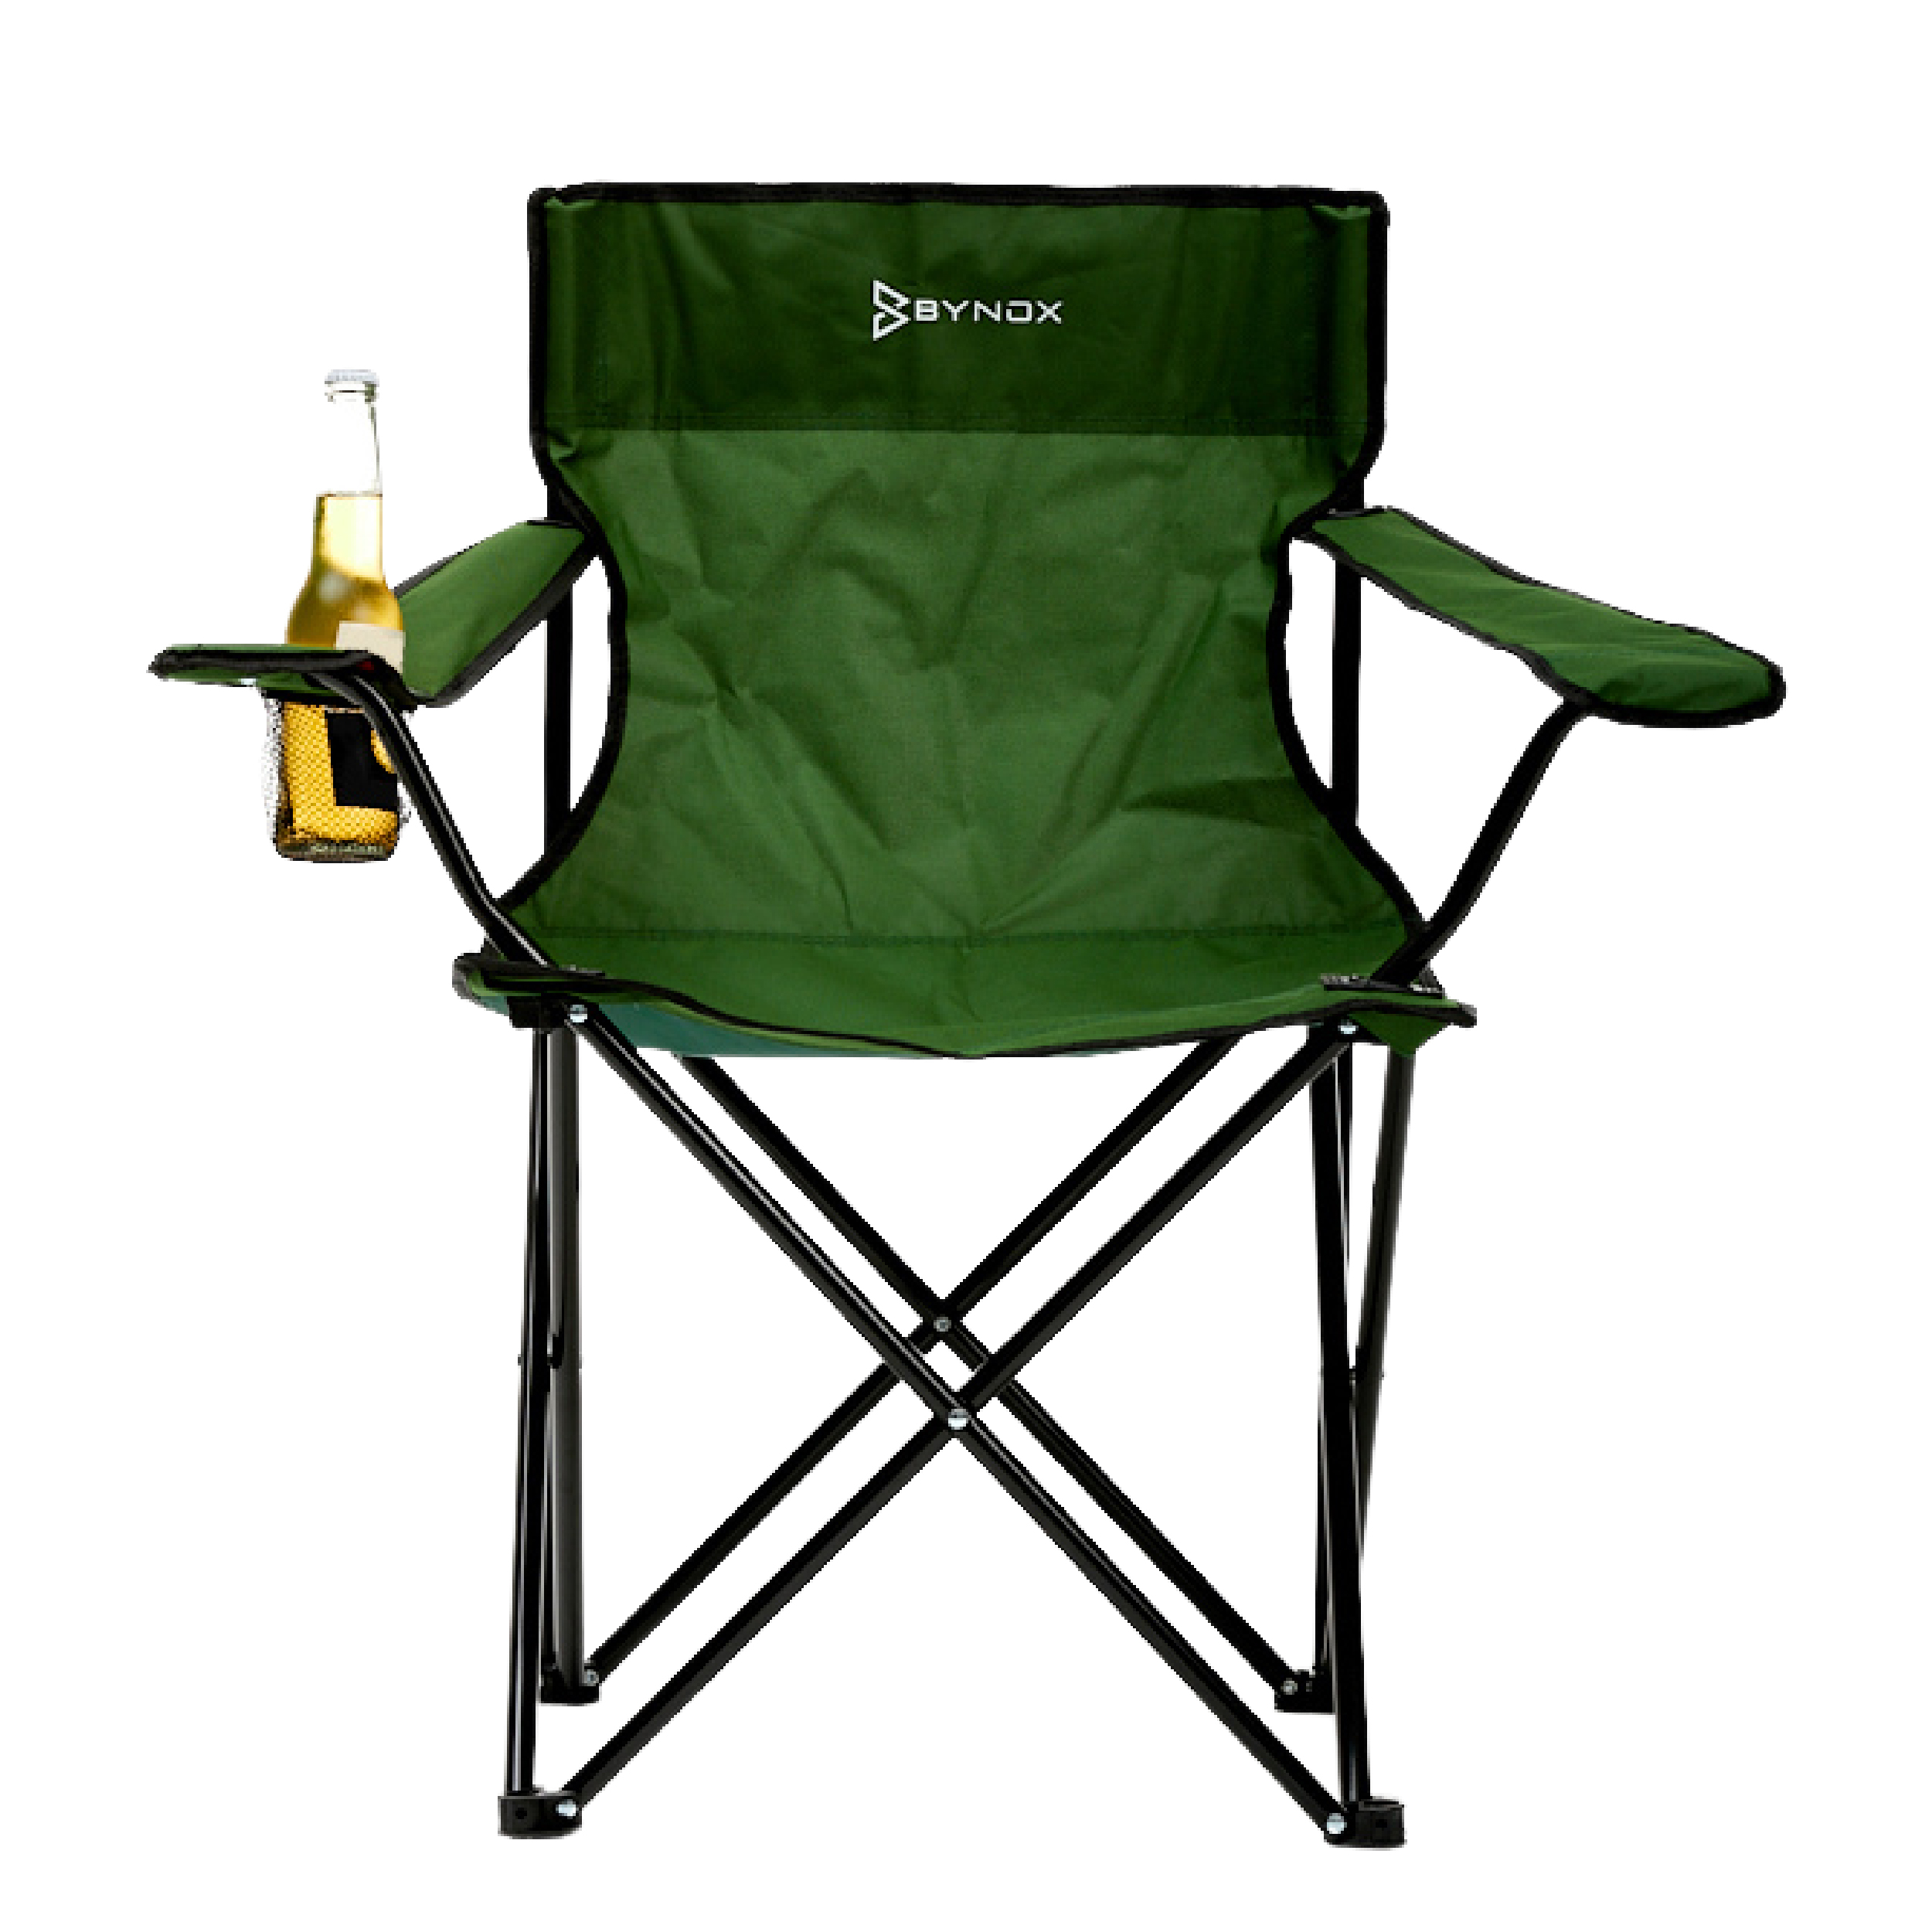 NECES Silla plegable para camping, muebles de patio verde, muebles de  exterior, accesorios de camping, sillas de patio, equipo de camping, silla